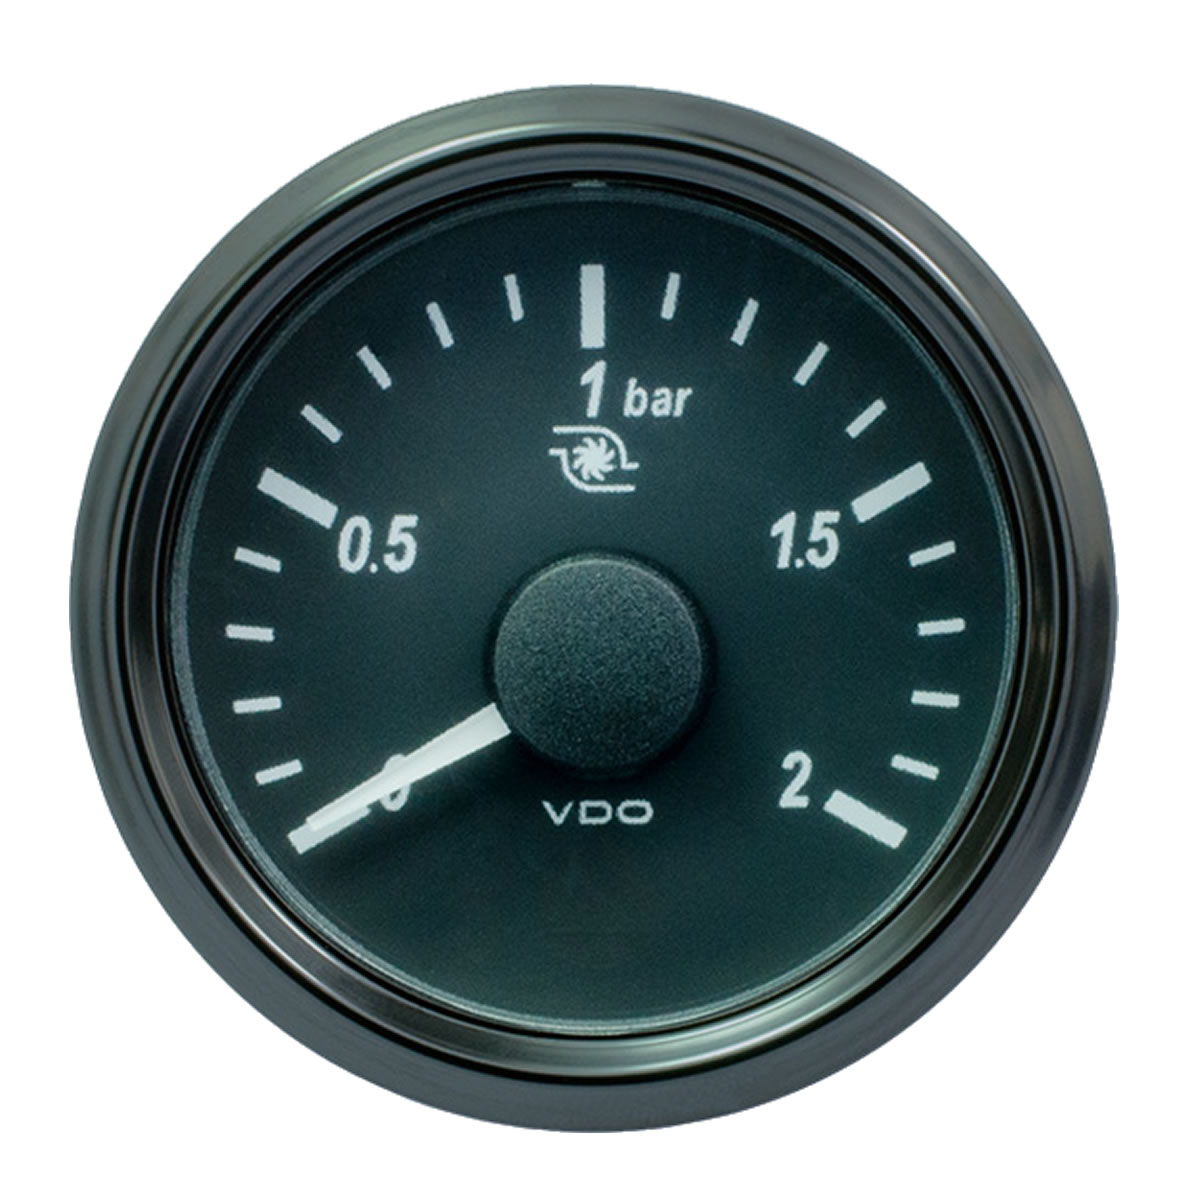 VDO 2bar turbo pressure gauges